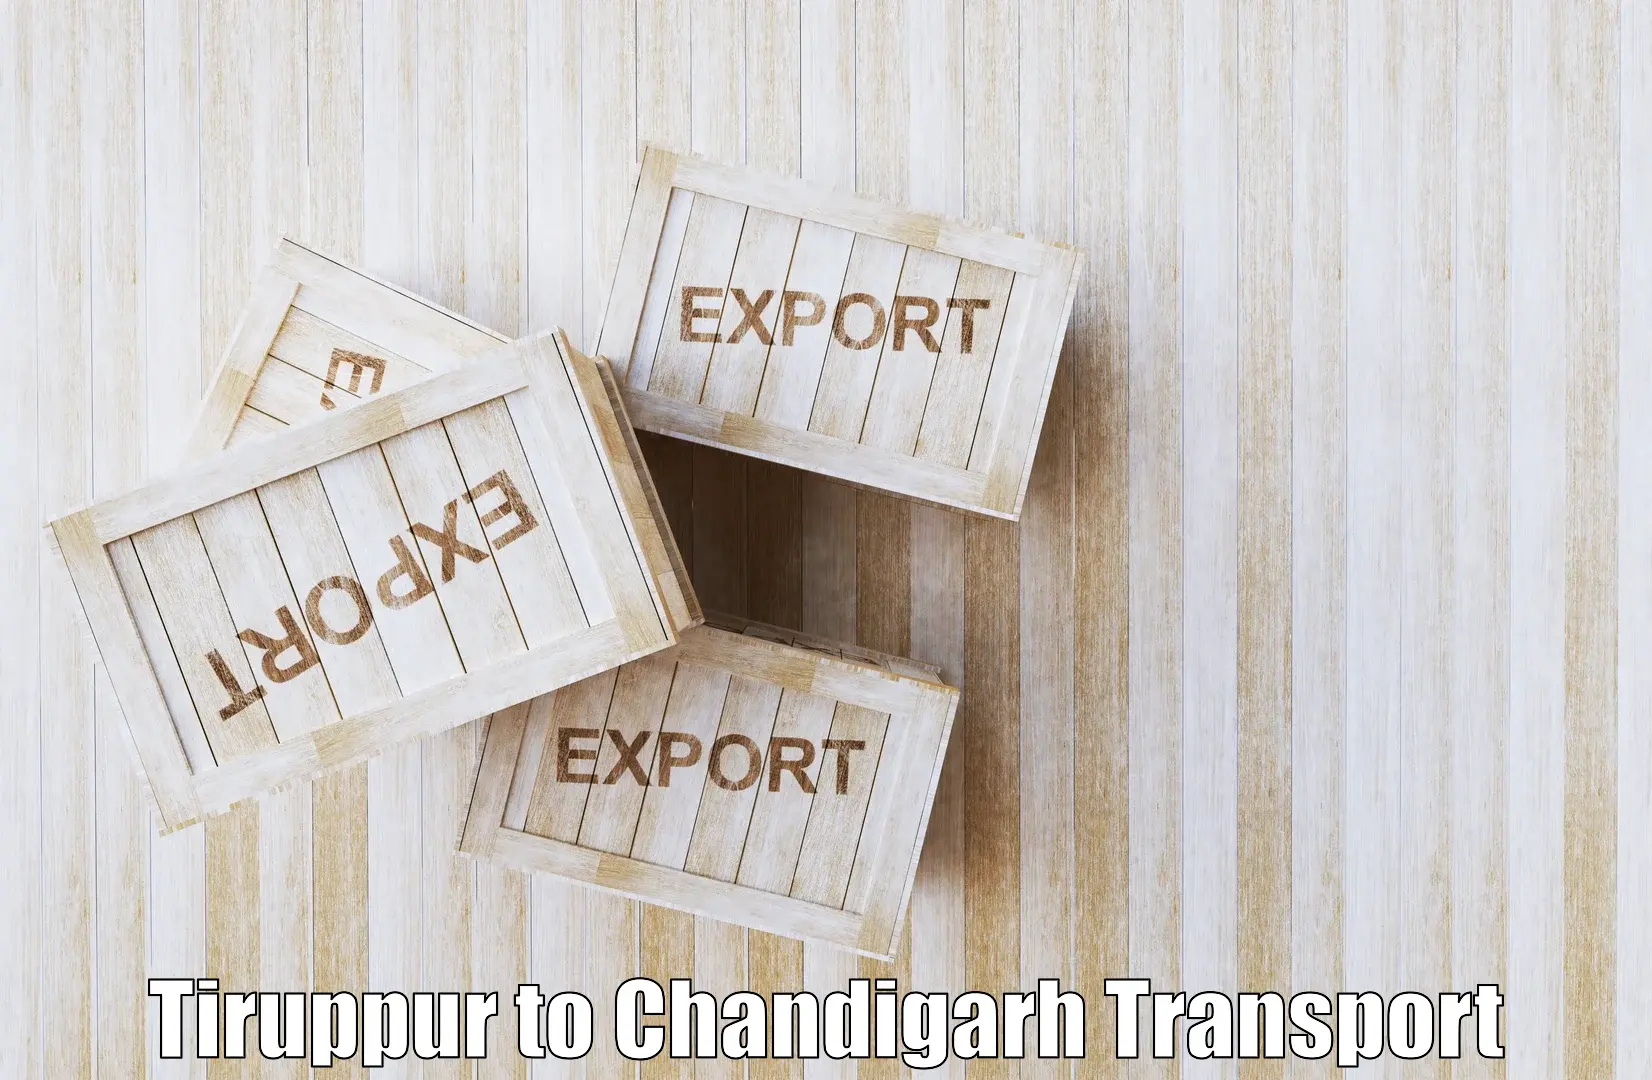 Interstate goods transport in Tiruppur to Chandigarh